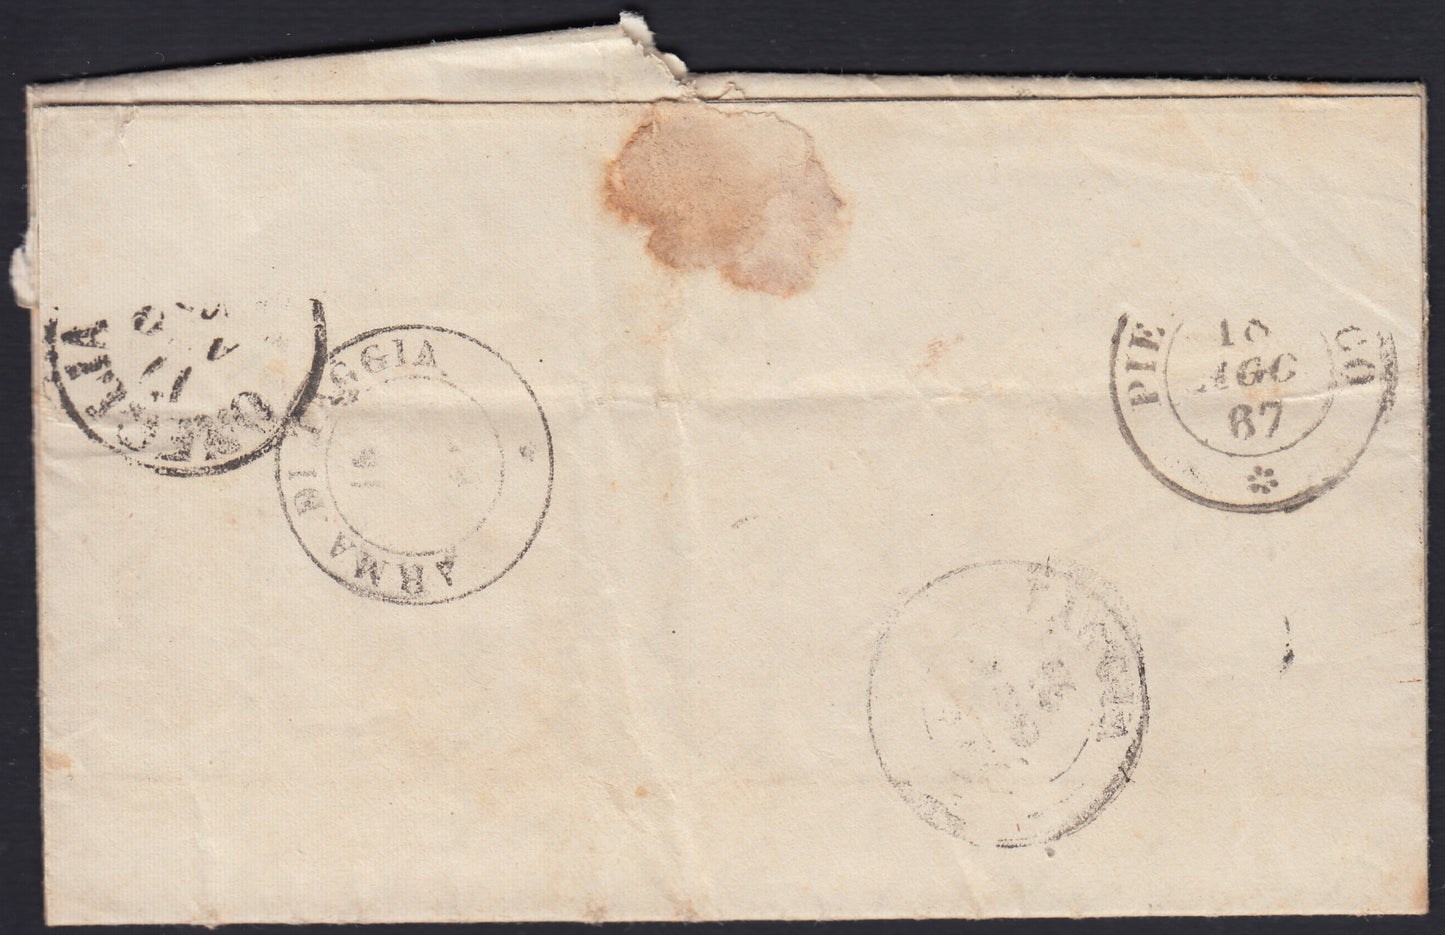 CG46 - 1879 - Issue De La Rue Turin edition c. 30 dark brown on letter from Camogli to Costantiopoli 11/8/78 (T19)